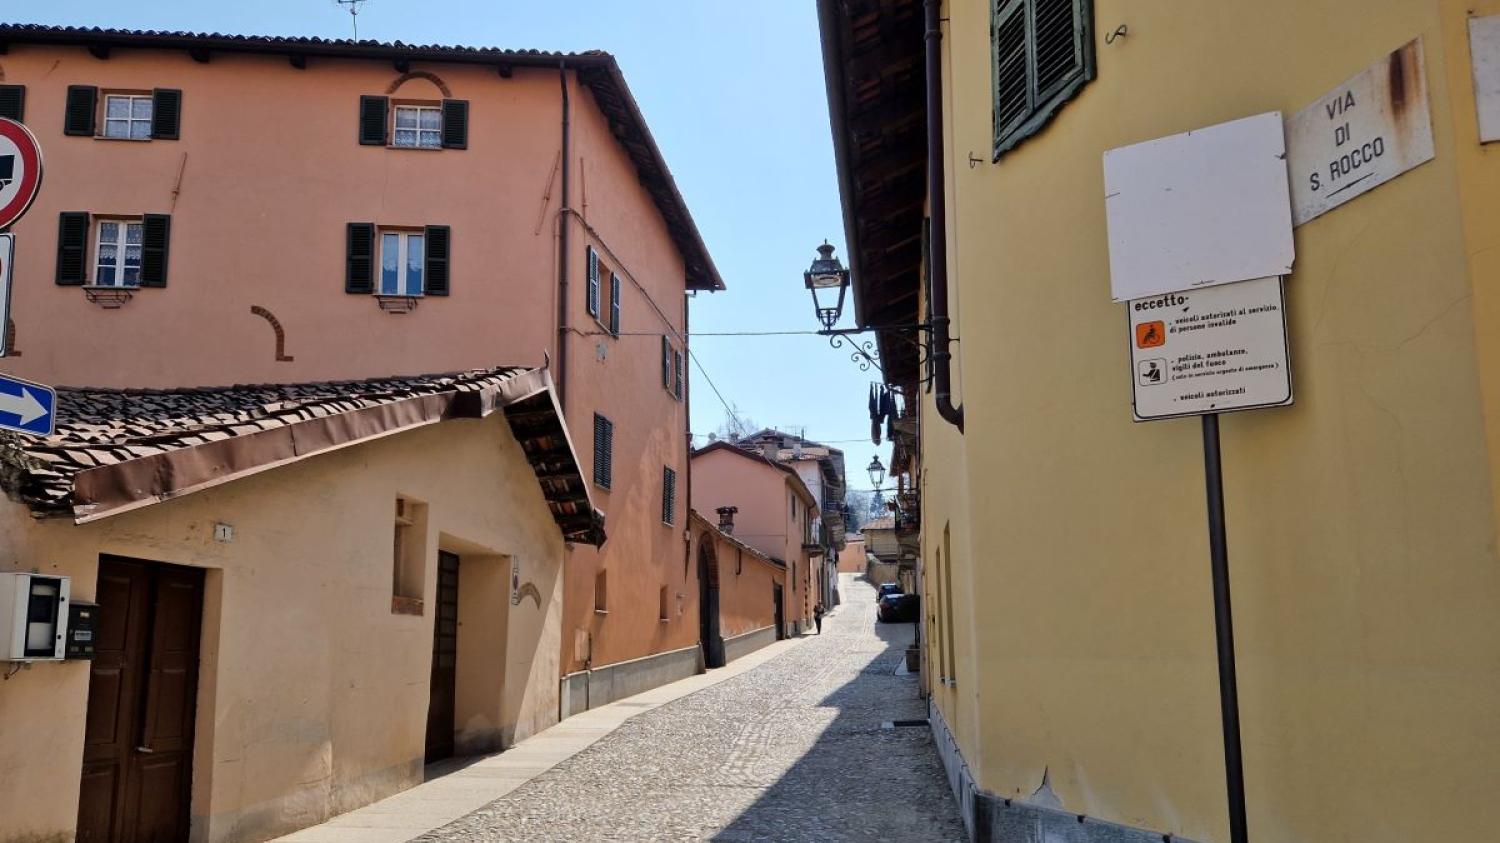 Strada San Rocco per salire al centro storico di Saluzzo